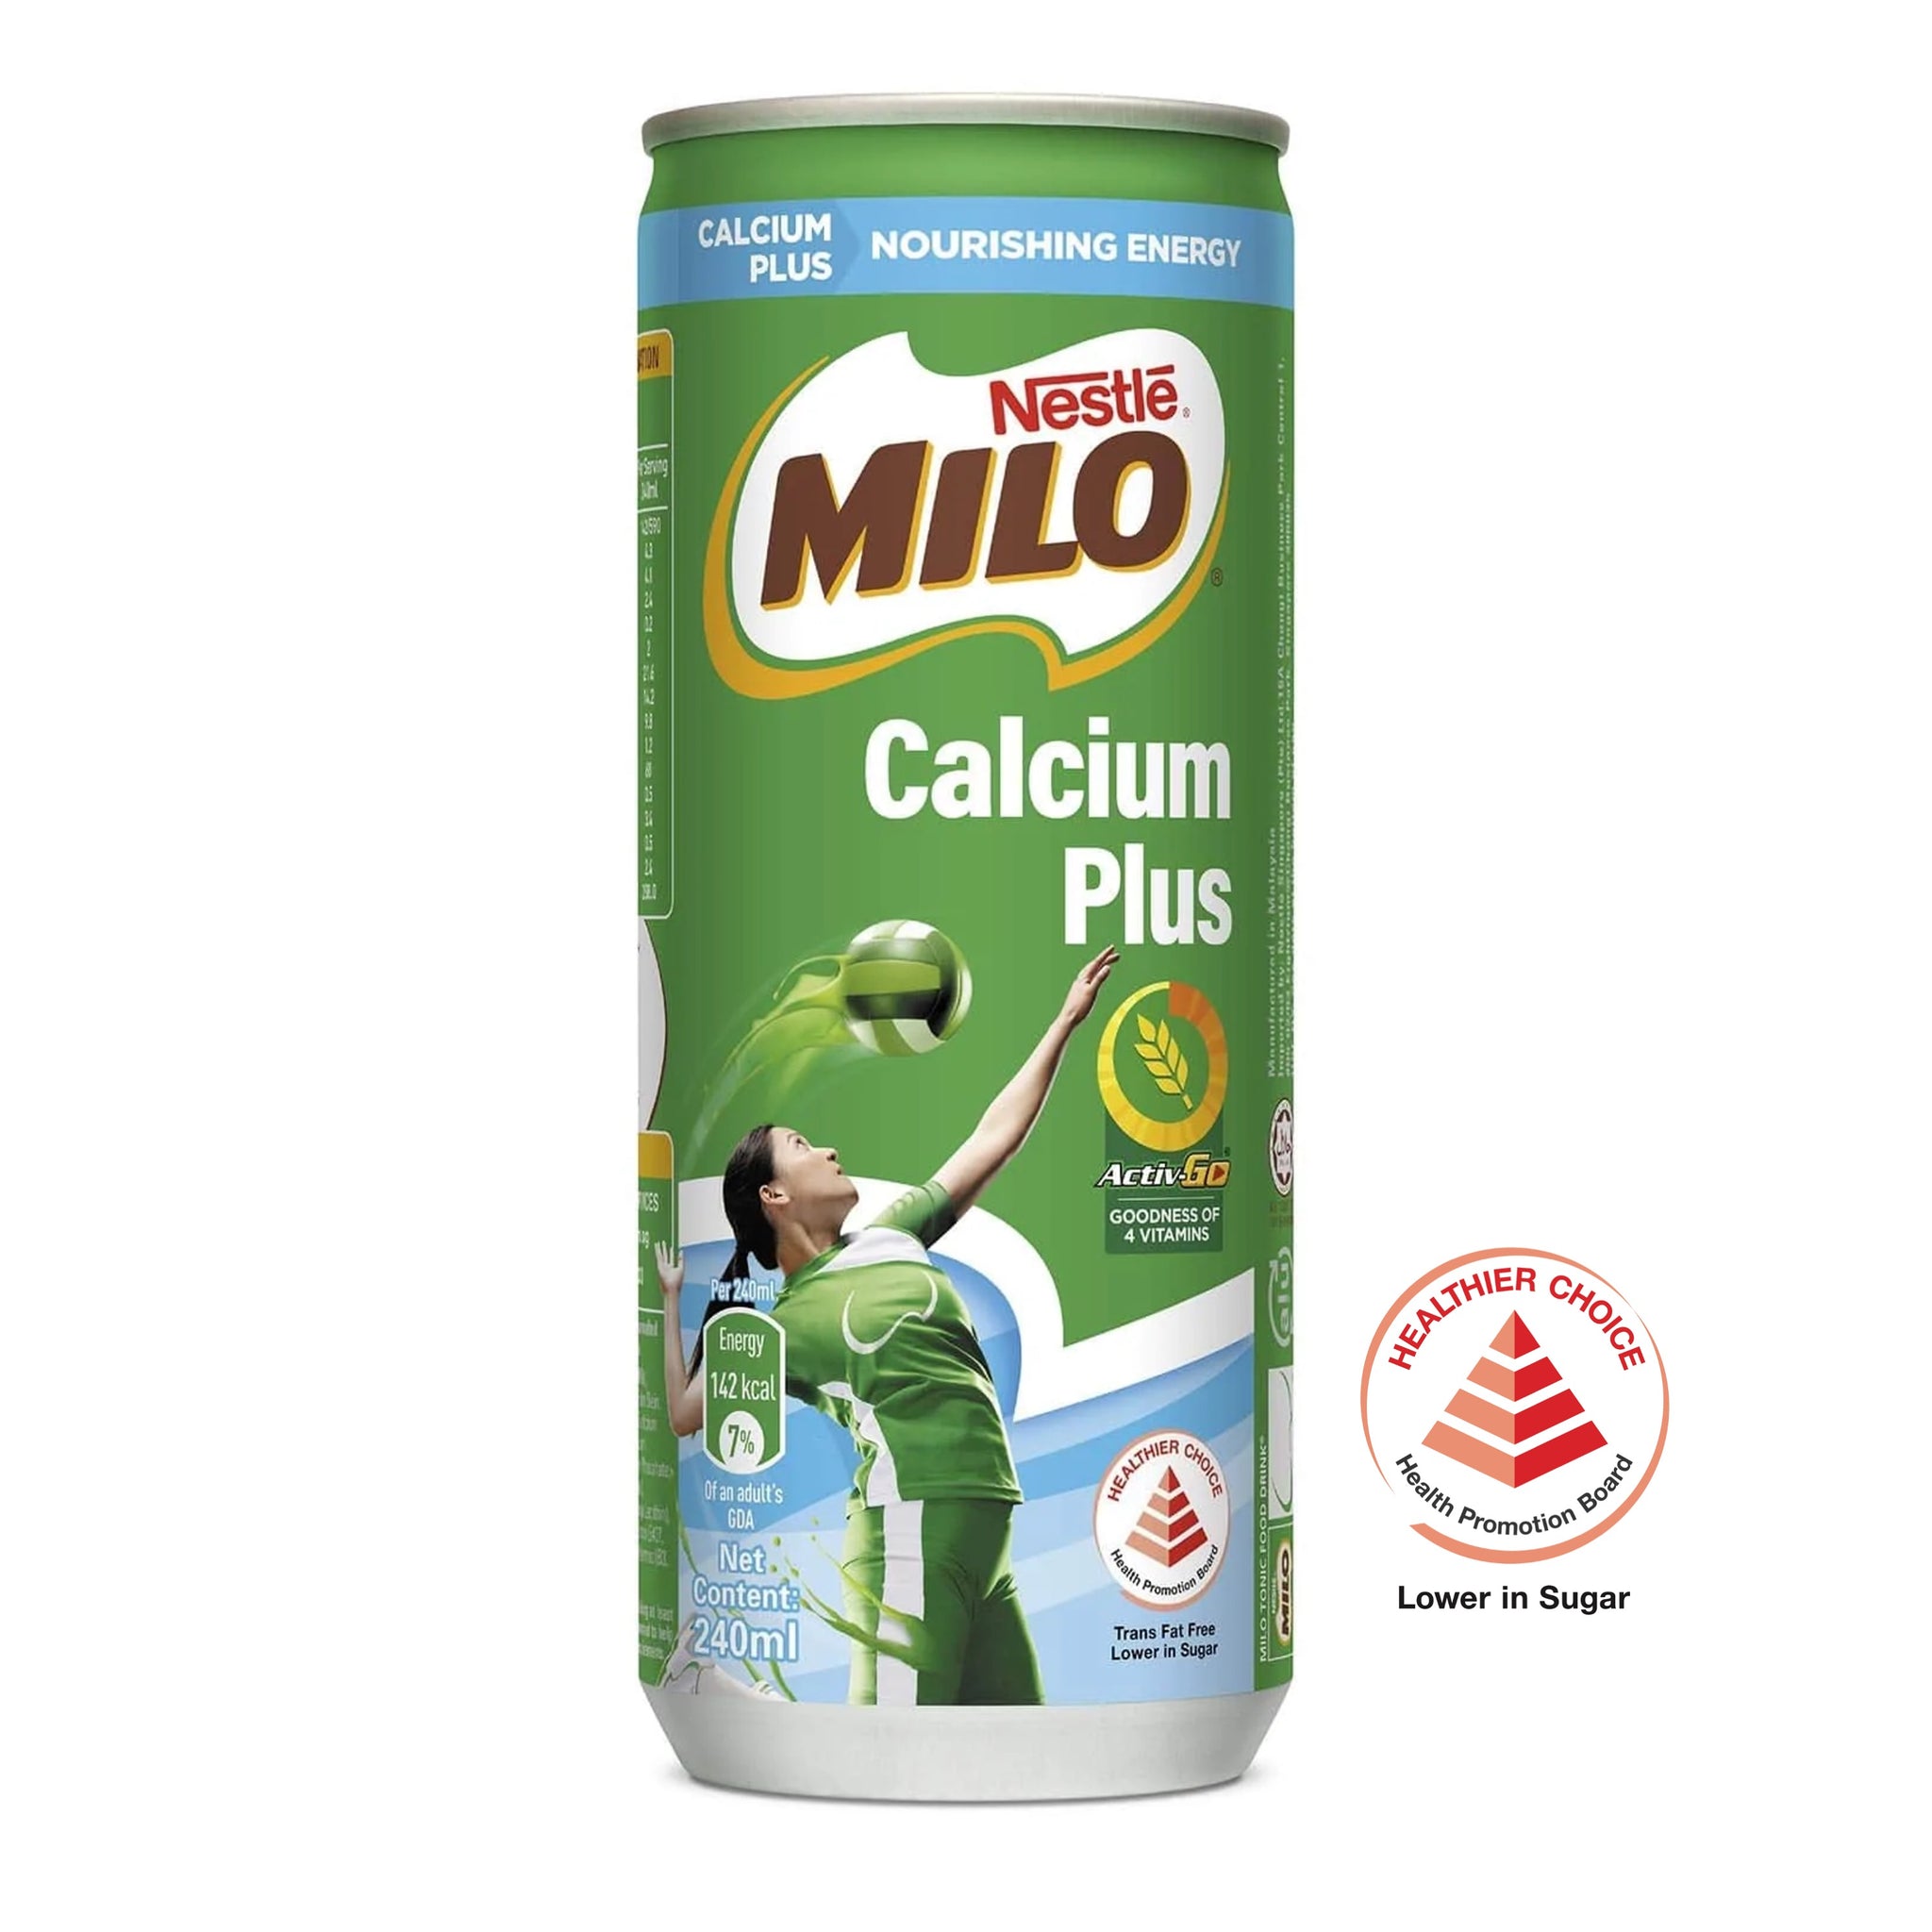 MILO Calcium Plus - Cans (24 x 240ml)